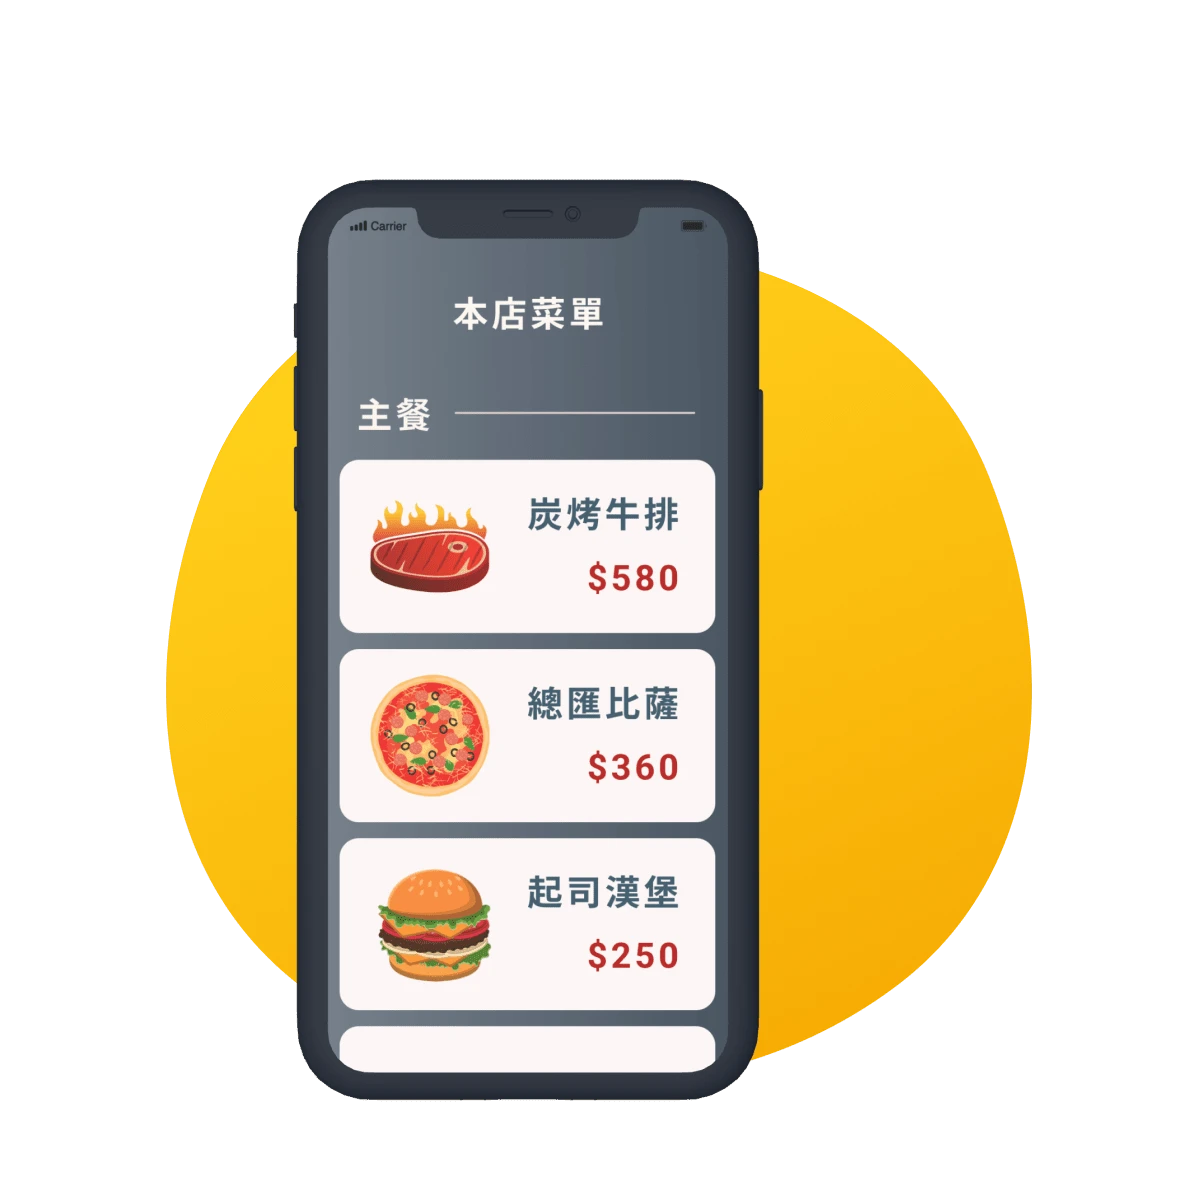 WishMobile 內容管理系統 ( 廣告管理系統 ) -  你的會員還在網路上尋找菜單嗎 ? 線上圖文菜單系統，讓品牌能夠輕鬆展示餐點，會員透過 APP / LINE 就能輕鬆掌握品牌餐點資訊，讓會員消費好輕鬆。